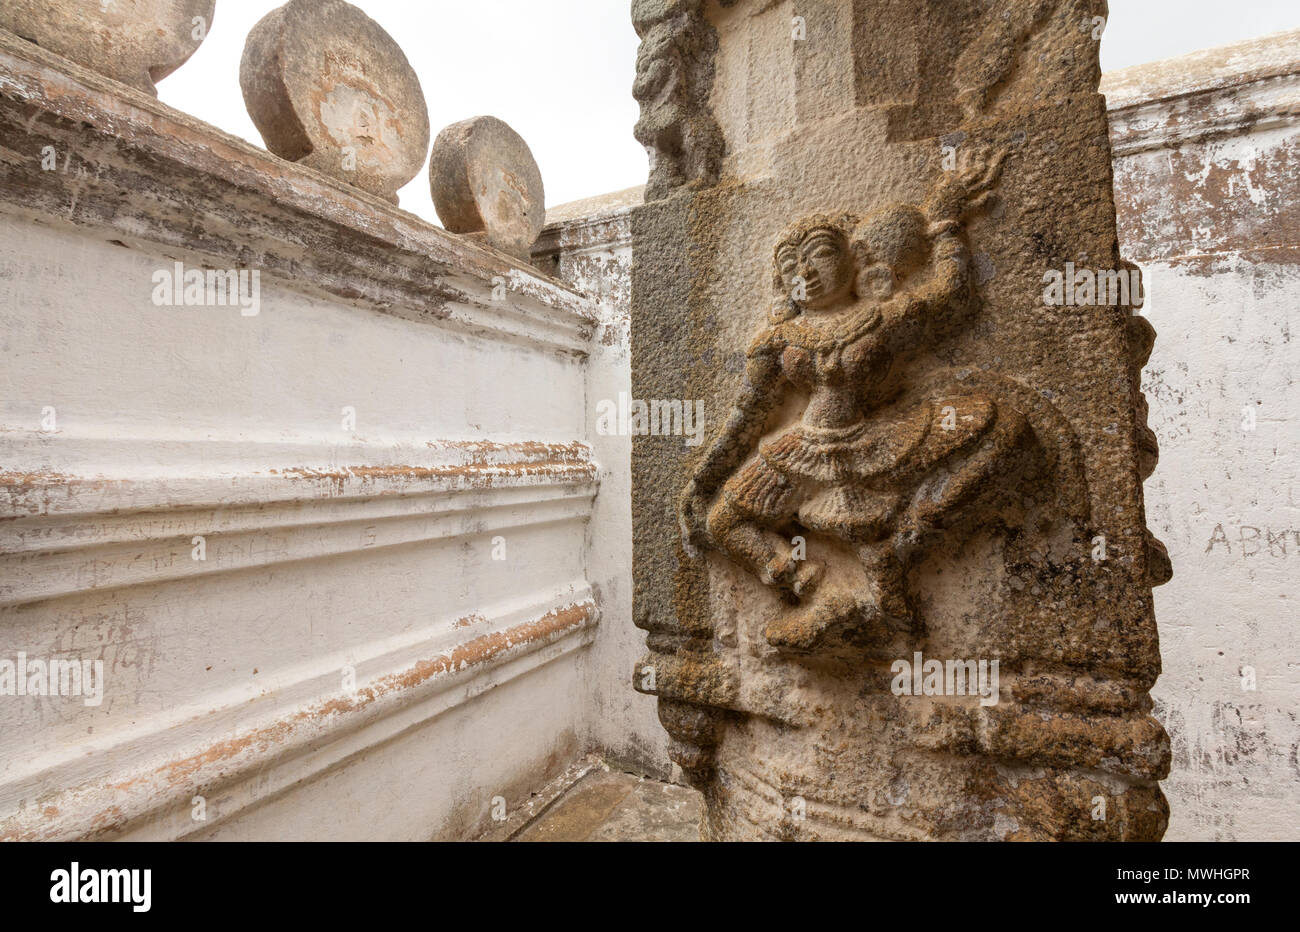 Architectural details of Bahubali gomateshwara Temple. Sculptures Hindu – jain deities seen on the walls. Stock Photo